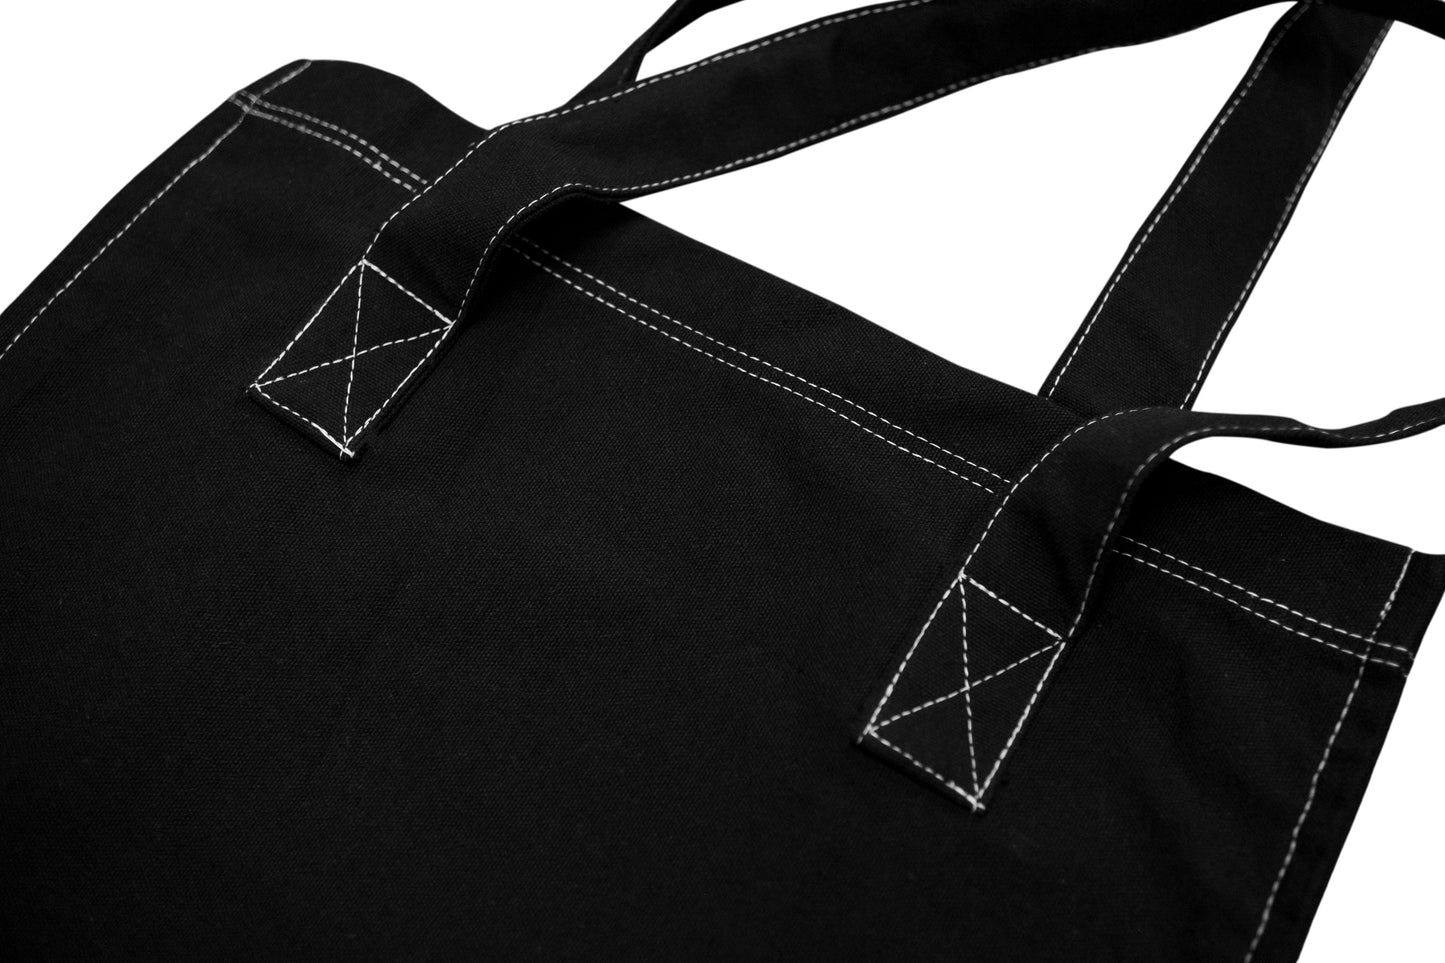 Weekenders Club Tote Bag ( Black )